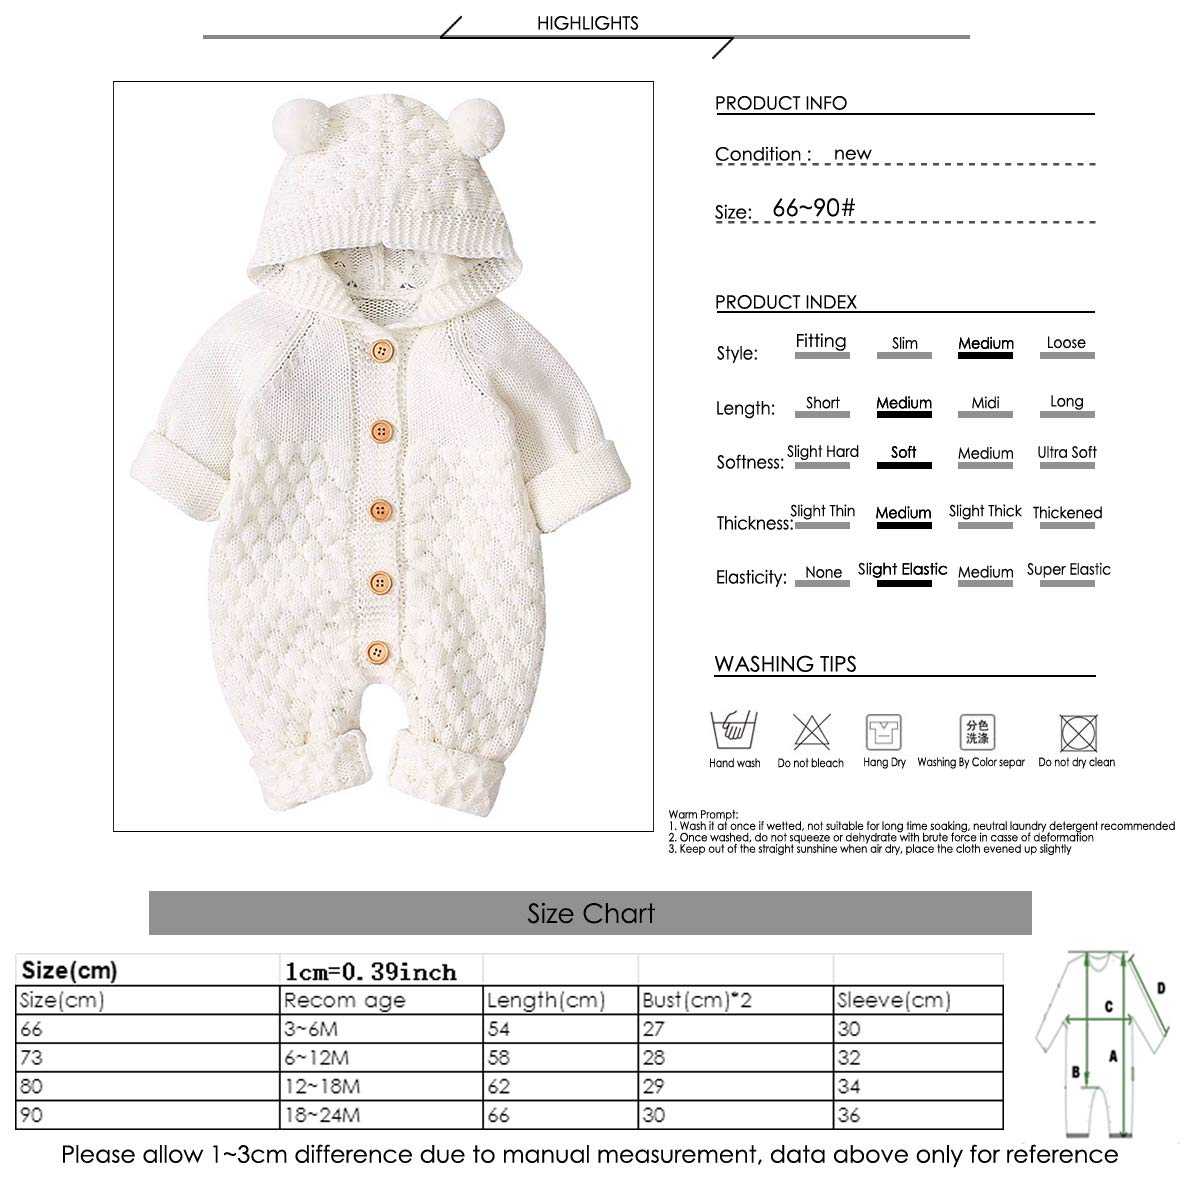 Вязание спицами комбинезона для новорожденных с описанием и схемами